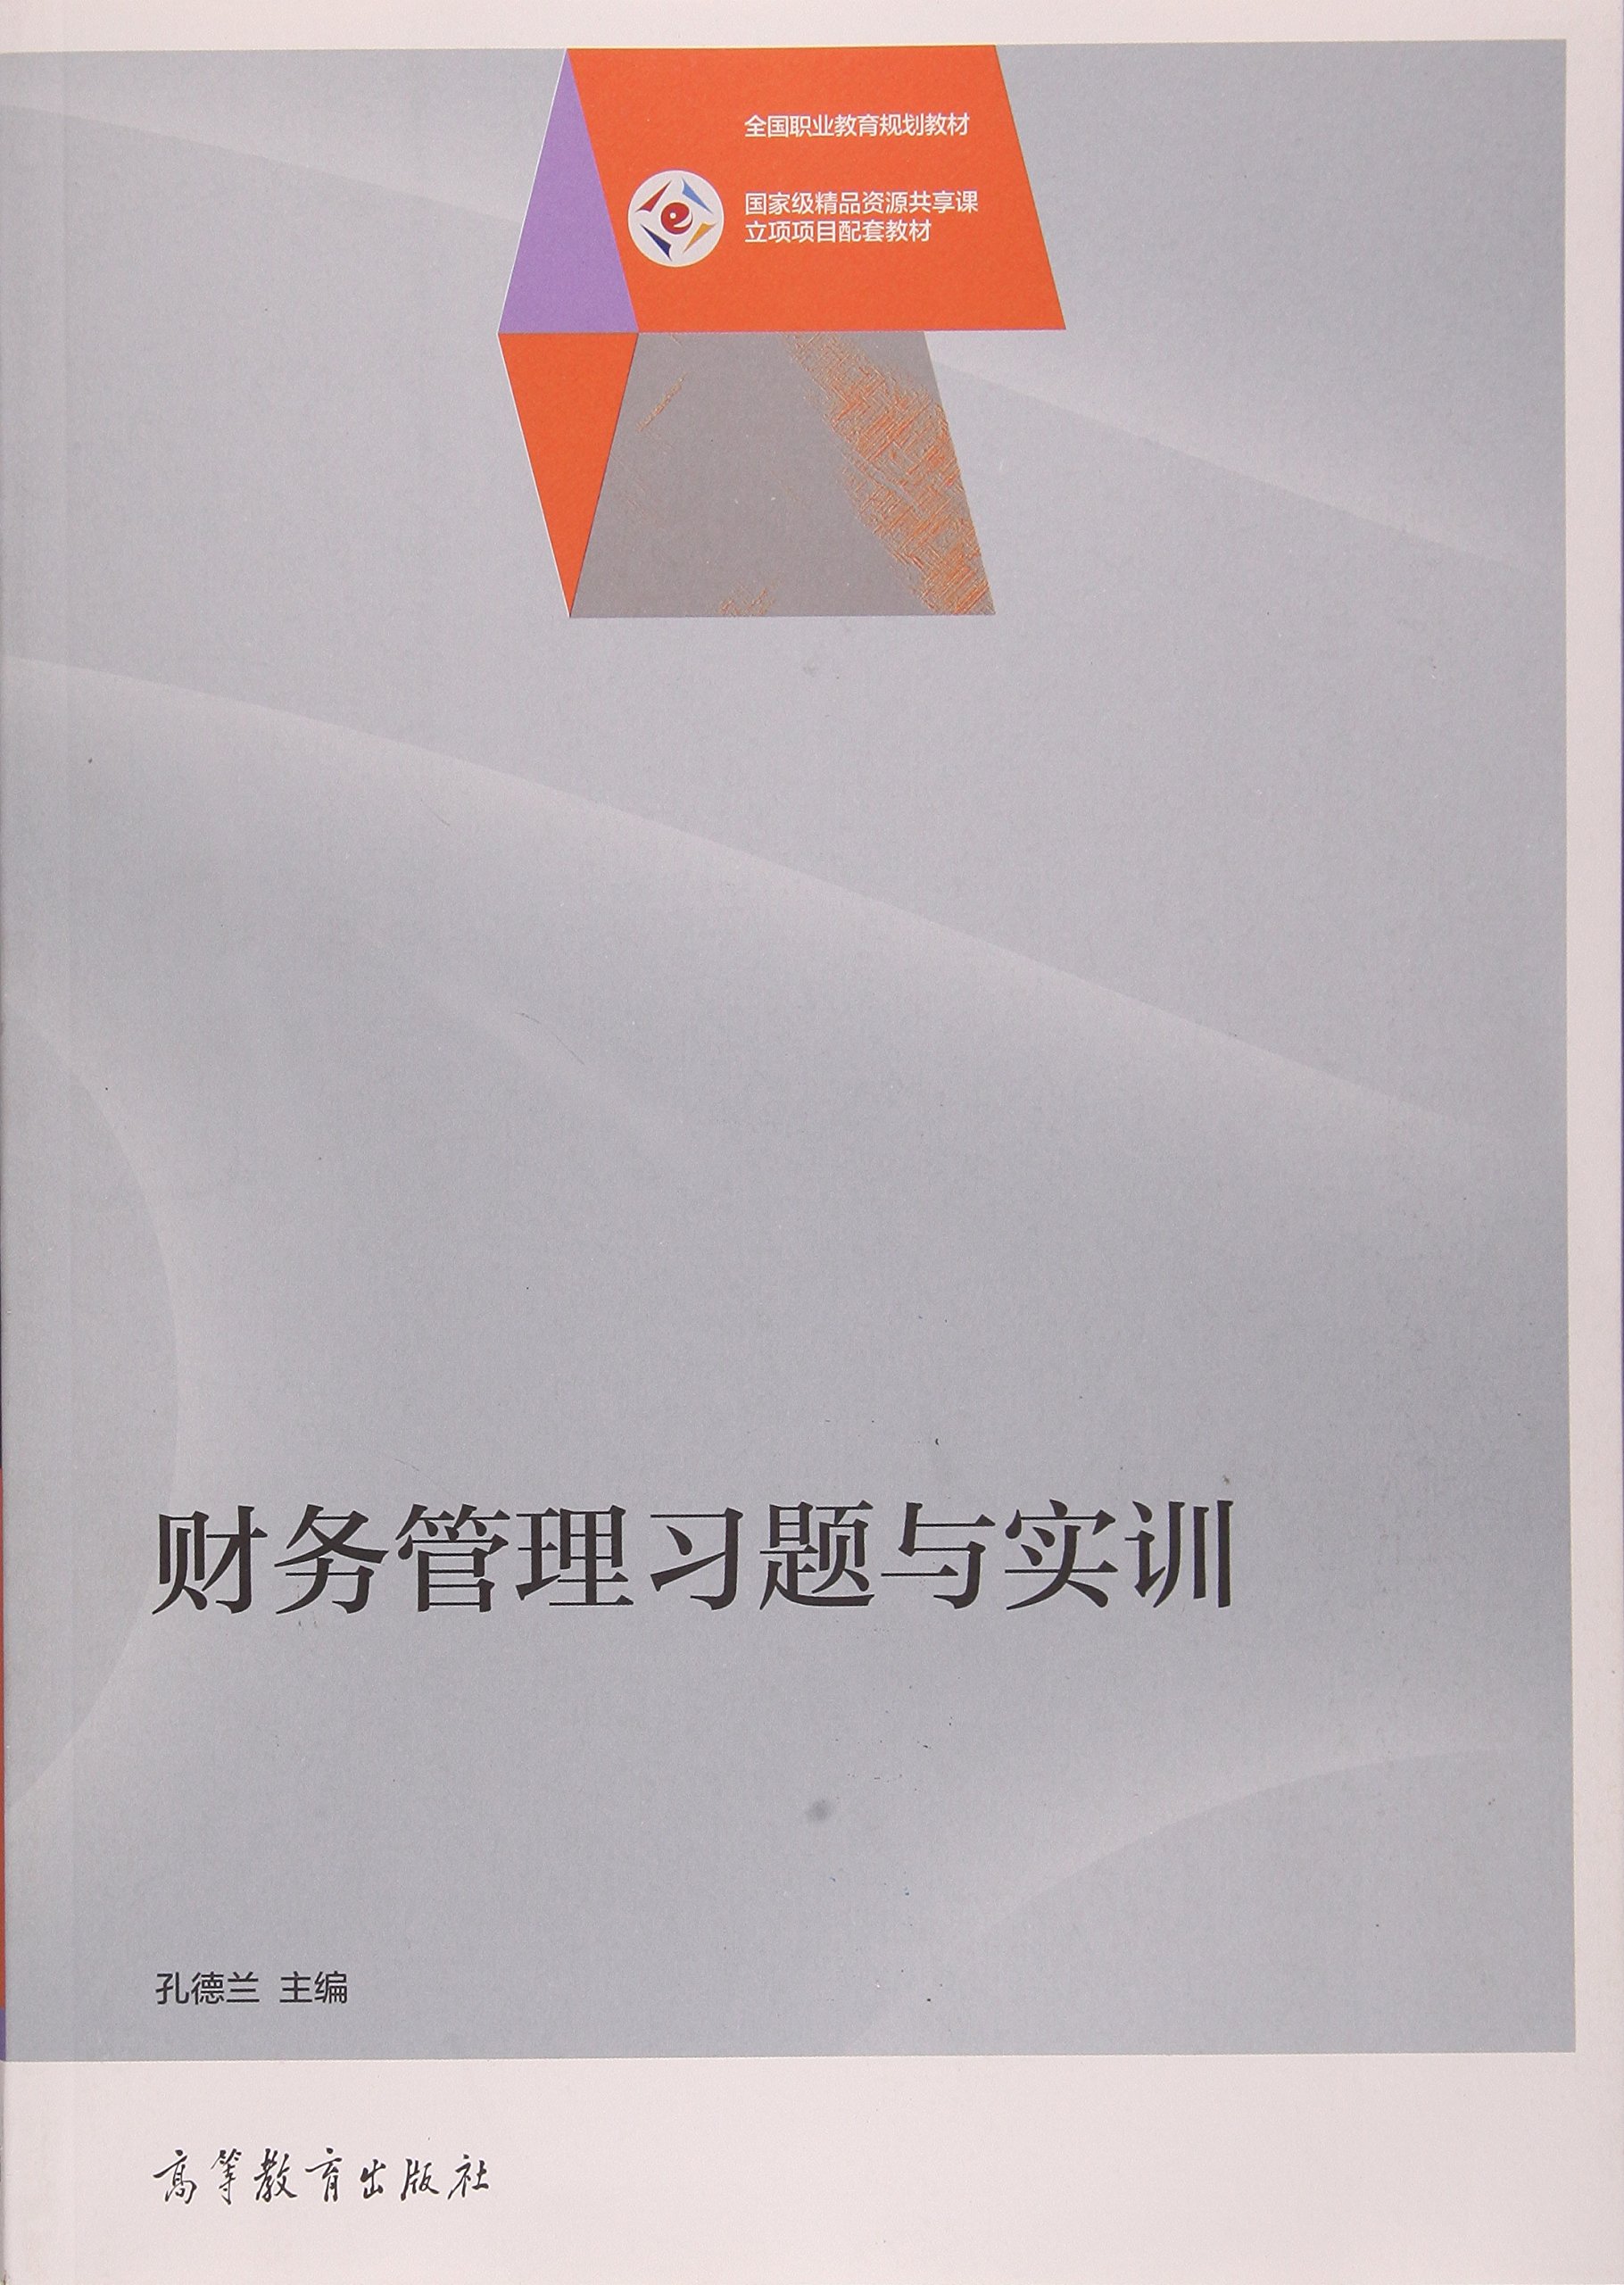 財務管理習題與實訓(2015年高等教育出版社出版的圖書)